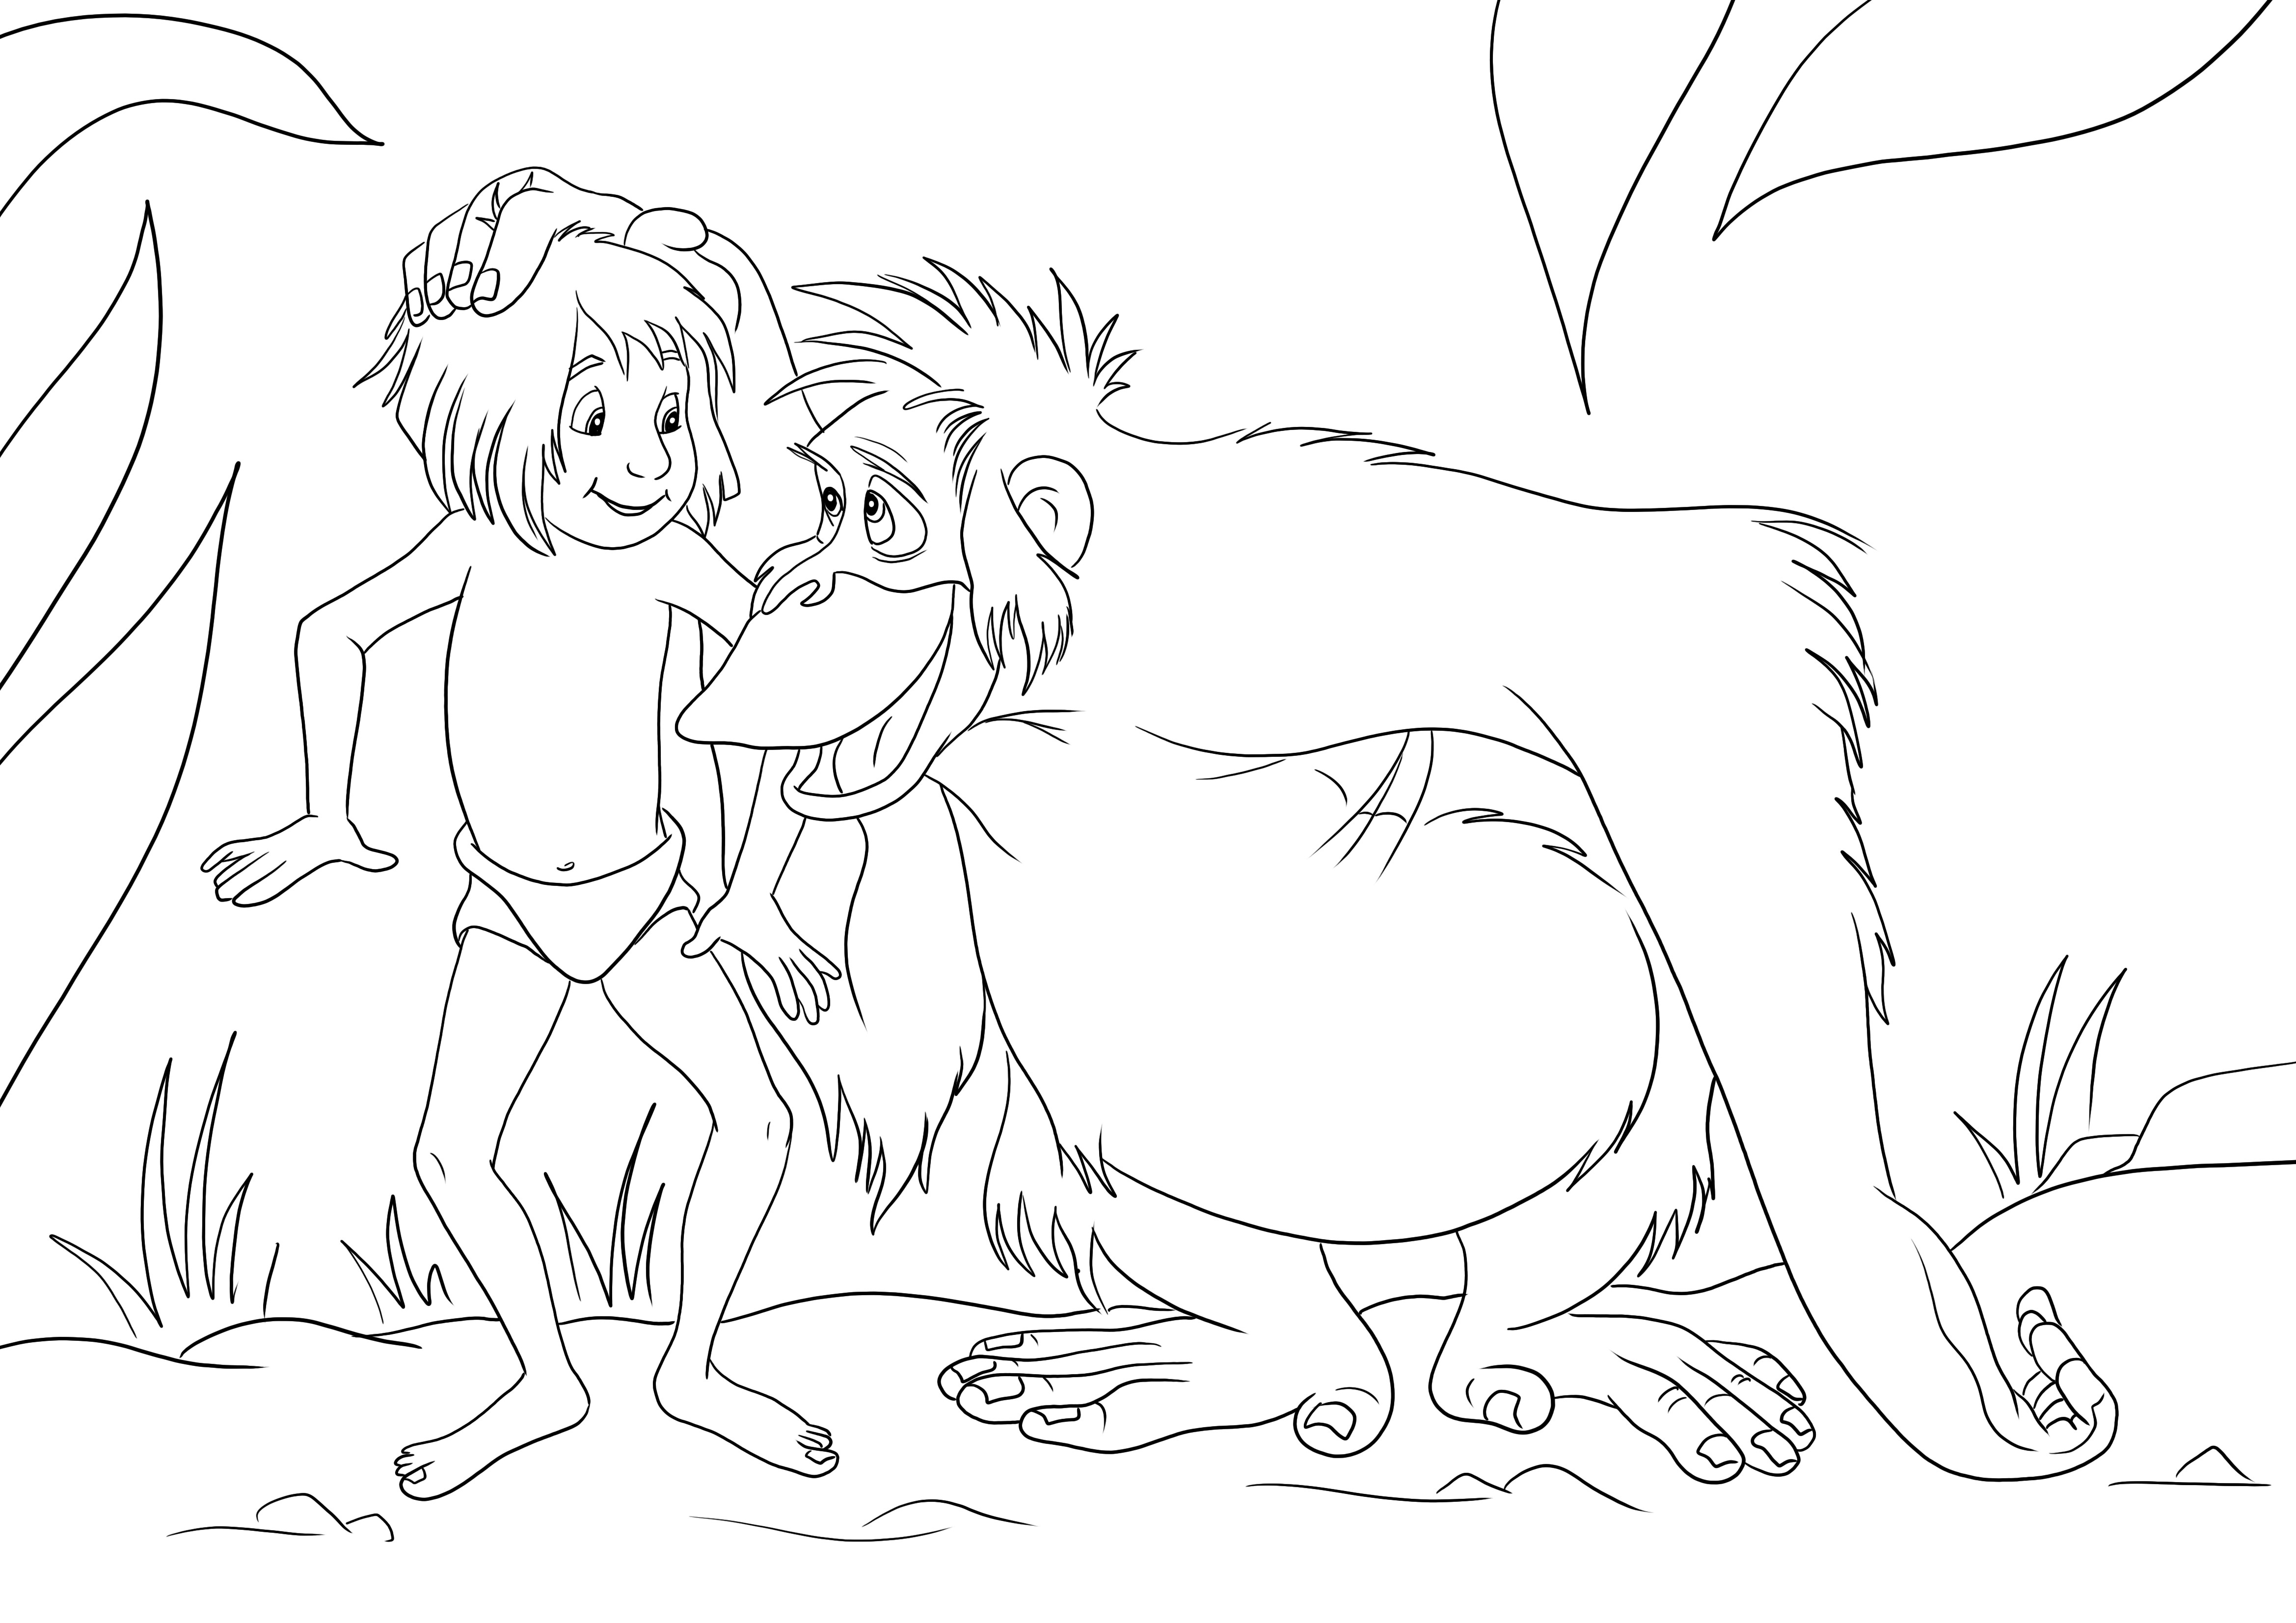 Mowgli i King Louie to łatwy arkusz do kolorowania gotowy do pobrania za darmo